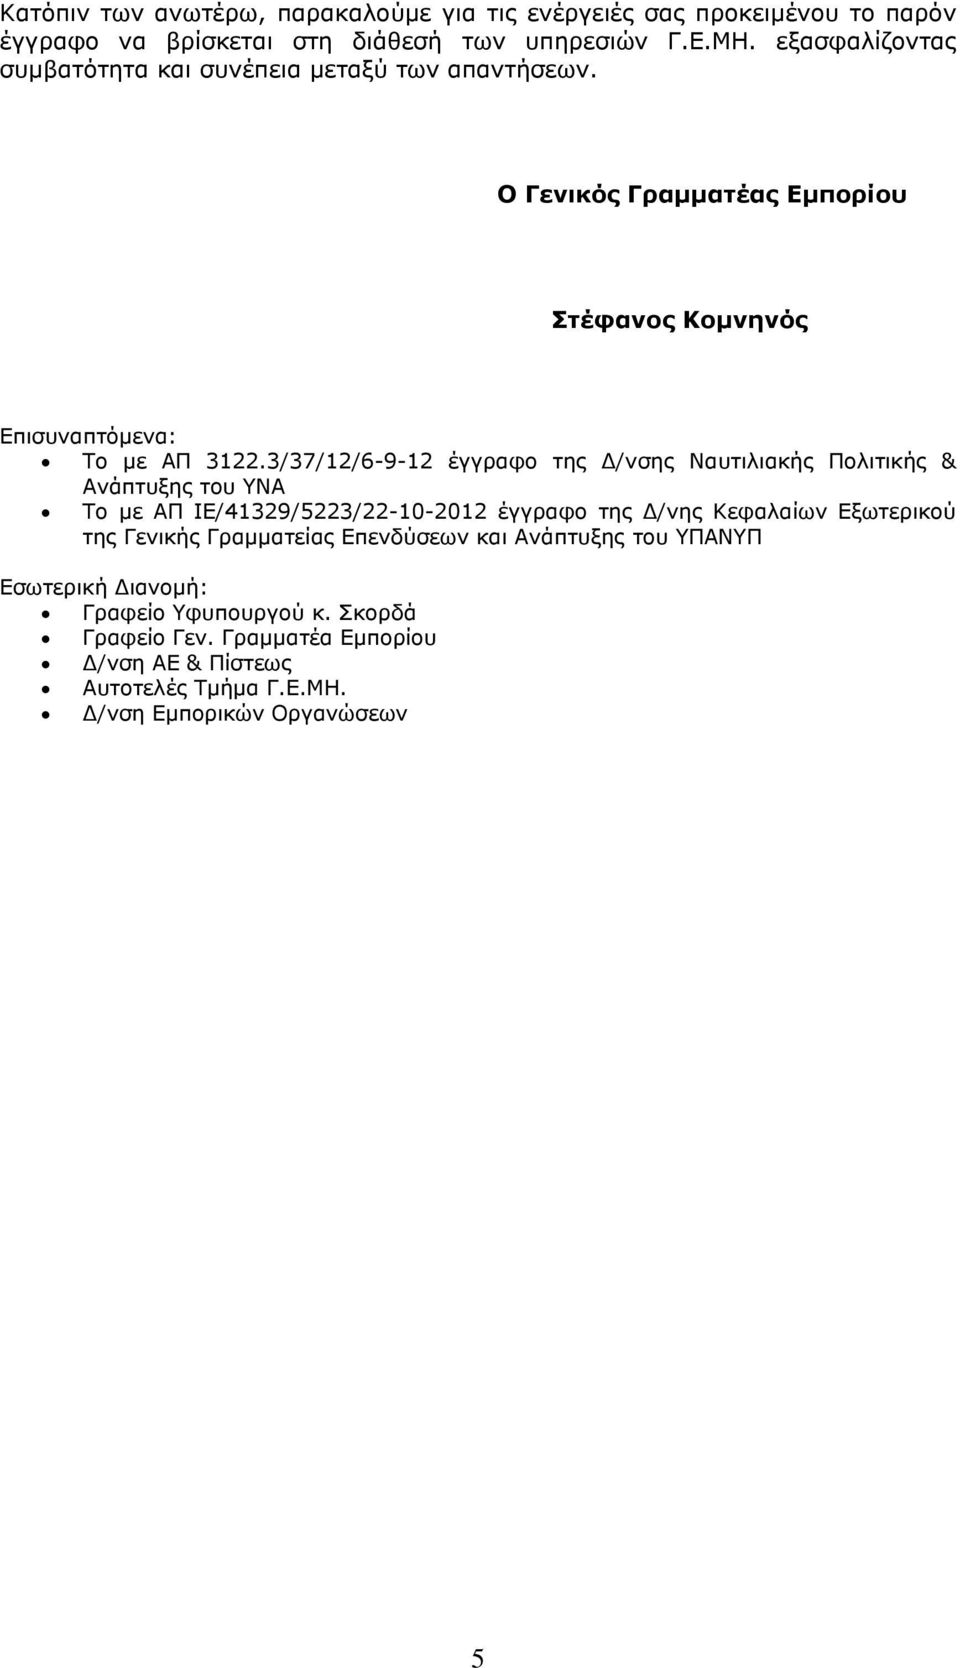 3/37/12/6-9-12 έγγραφο της Δ/νσης Ναυτιλιακής Πολιτικής & Ανάπτυξης του ΥΝΑ Το με ΑΠ ΙΕ/41329/5223/22-10-2012 έγγραφο της Δ/νης Κεφαλαίων Εξωτερικού της